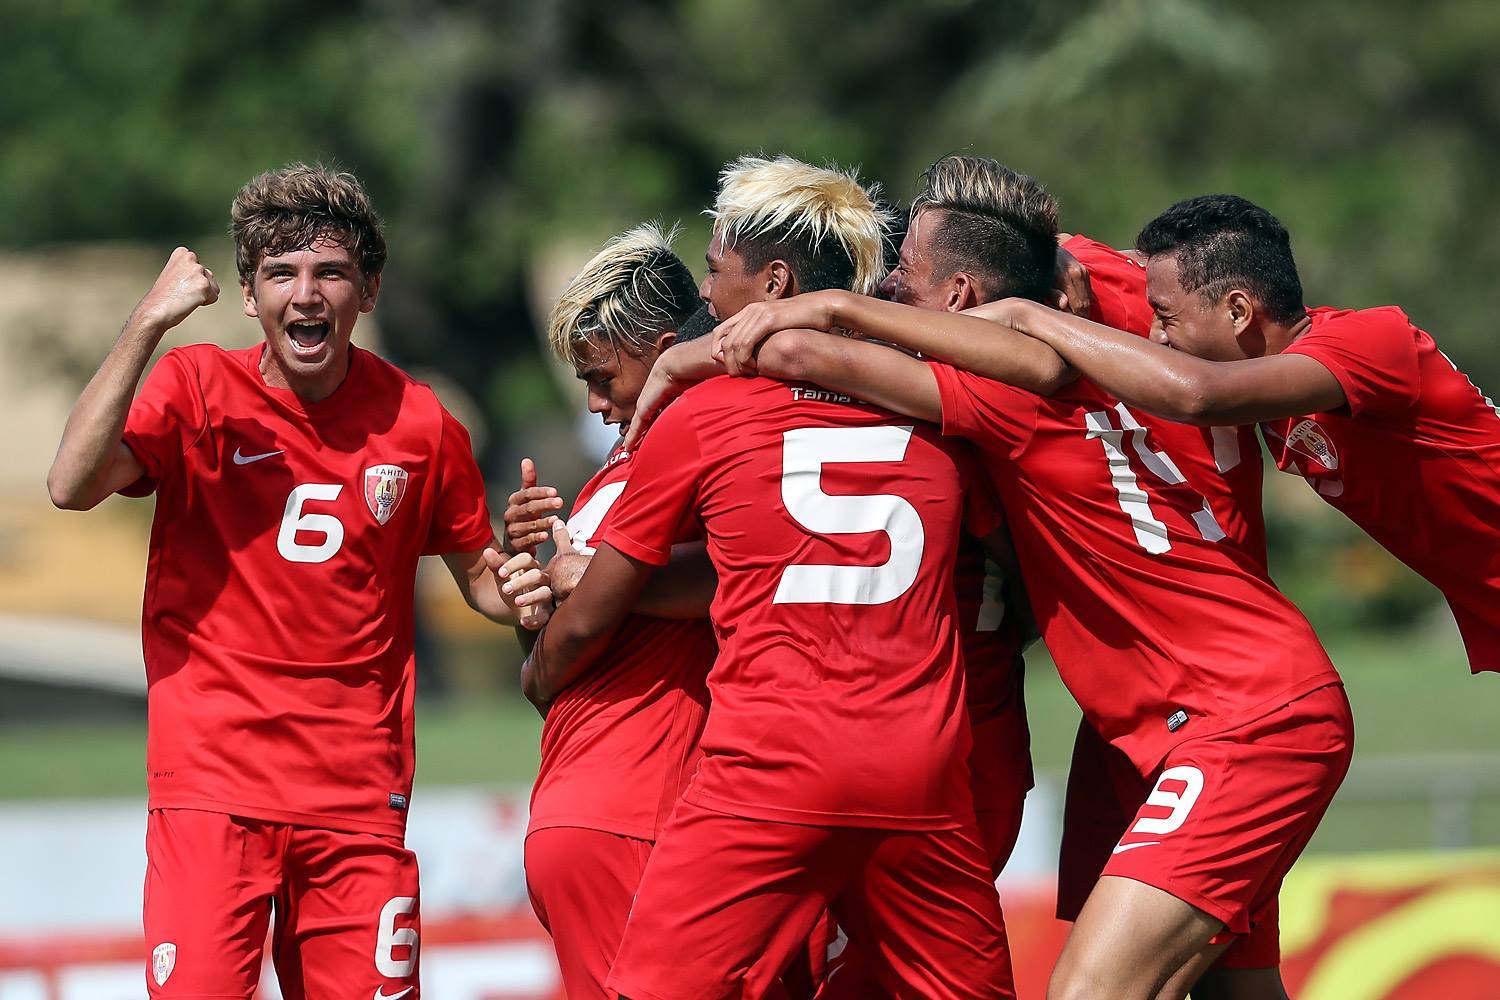 Football - Championnat OFC U16 : Bon début pour Tahiti face aux Cagous